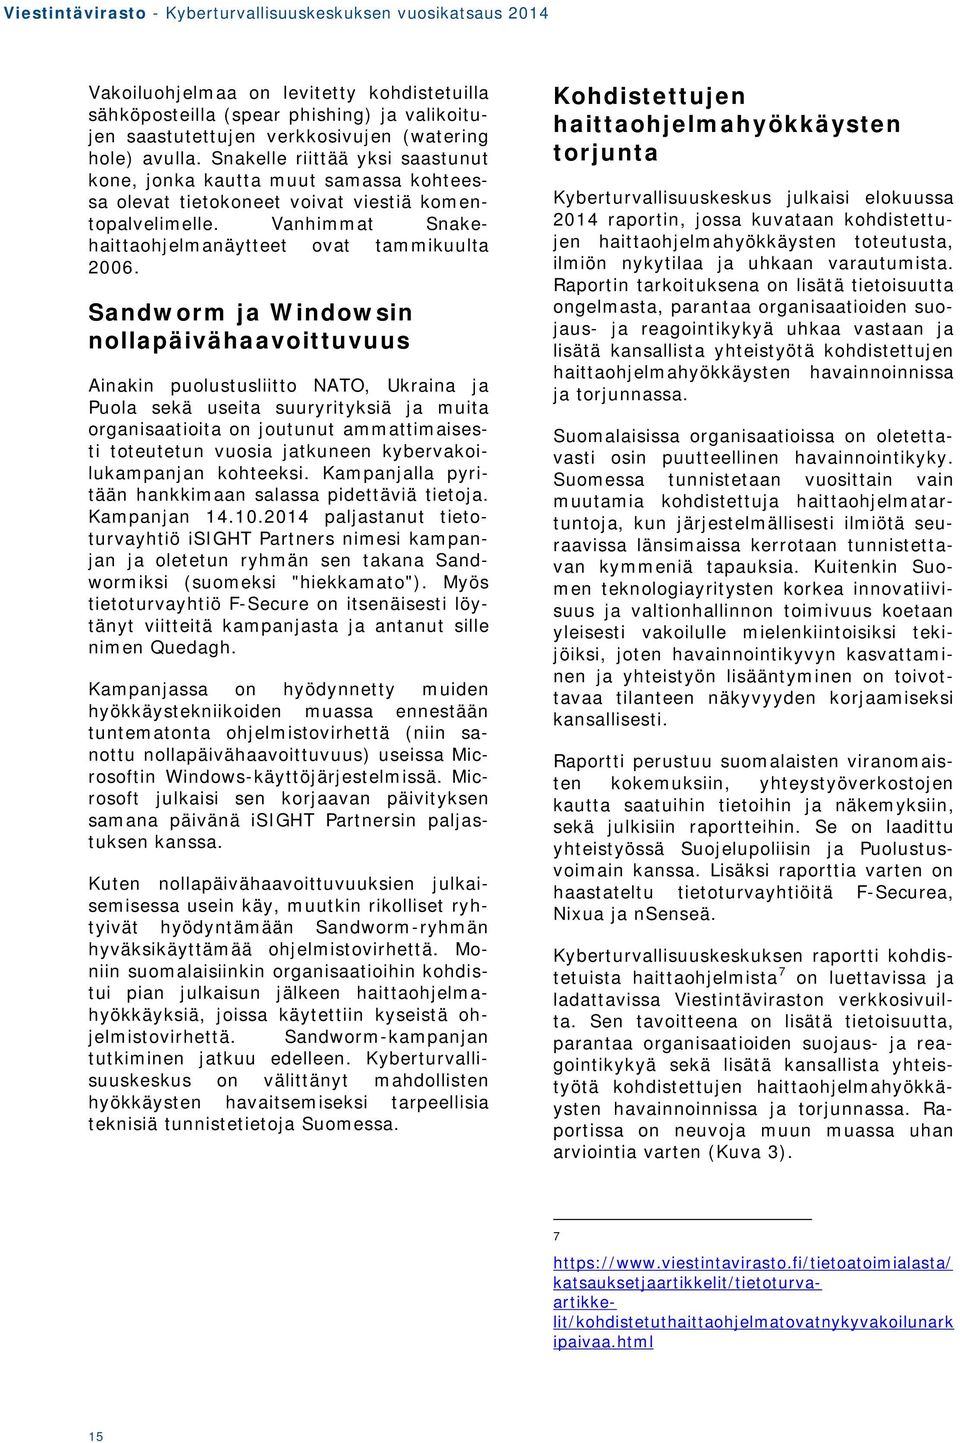 Sandworm ja Windowsin nollapäivähaavoittuvuus Ainakin puolustusliitto NATO, Ukraina ja Puola sekä useita suuryrityksiä ja muita organisaatioita on joutunut ammattimaisesti toteutetun vuosia jatkuneen